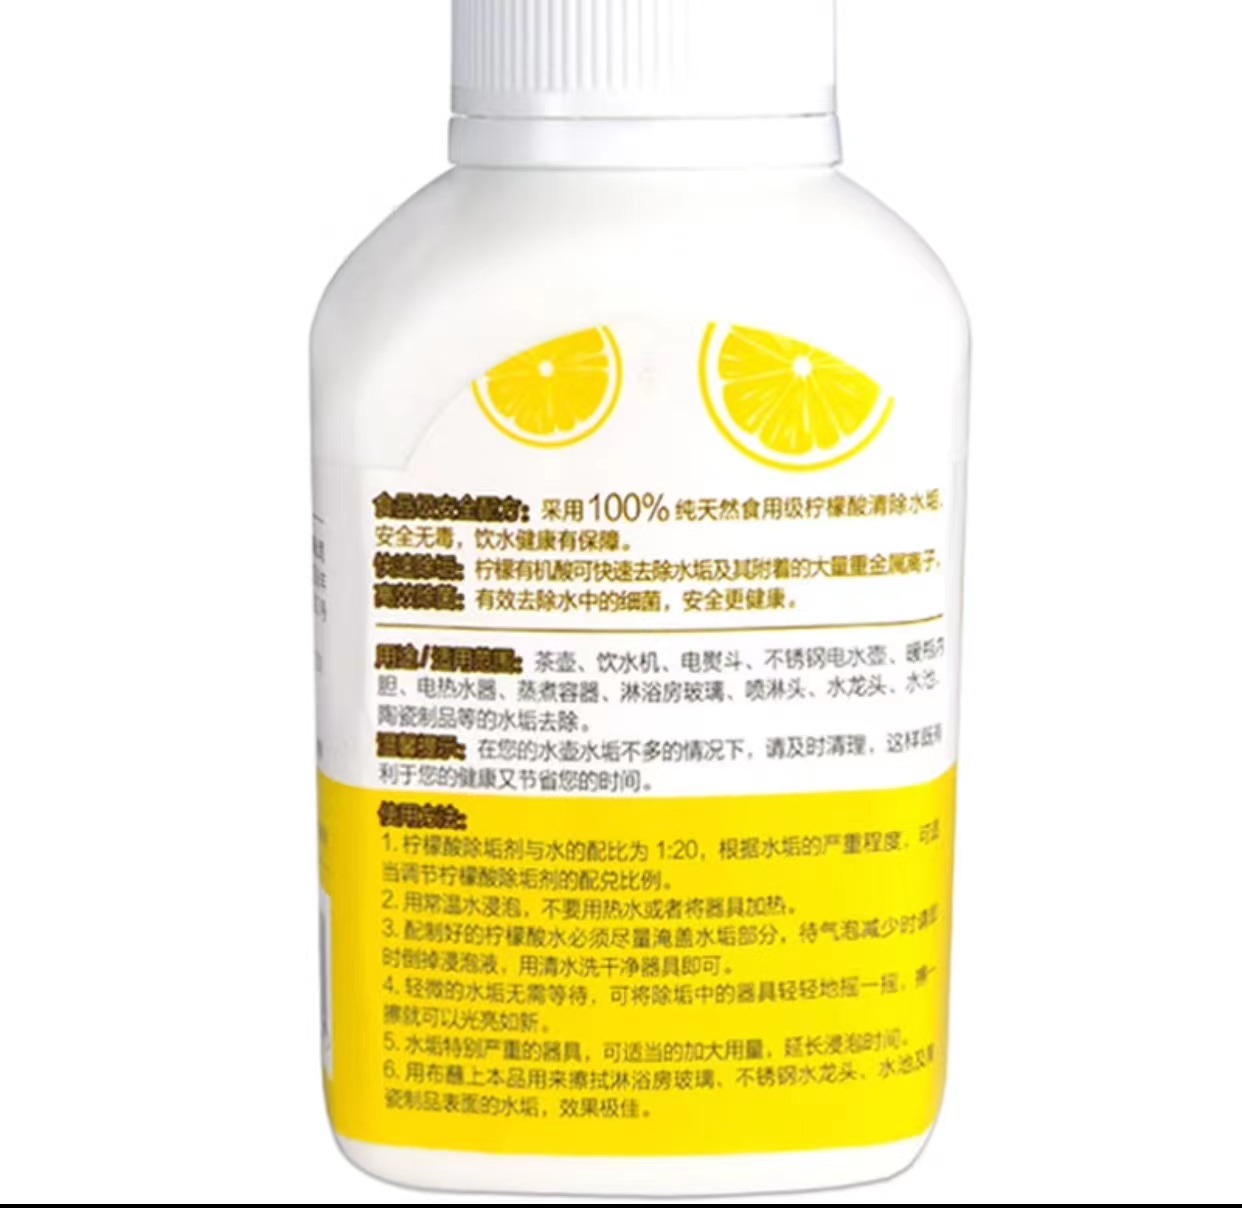 绿伞280G柠檬酸除垢剂(瓶)